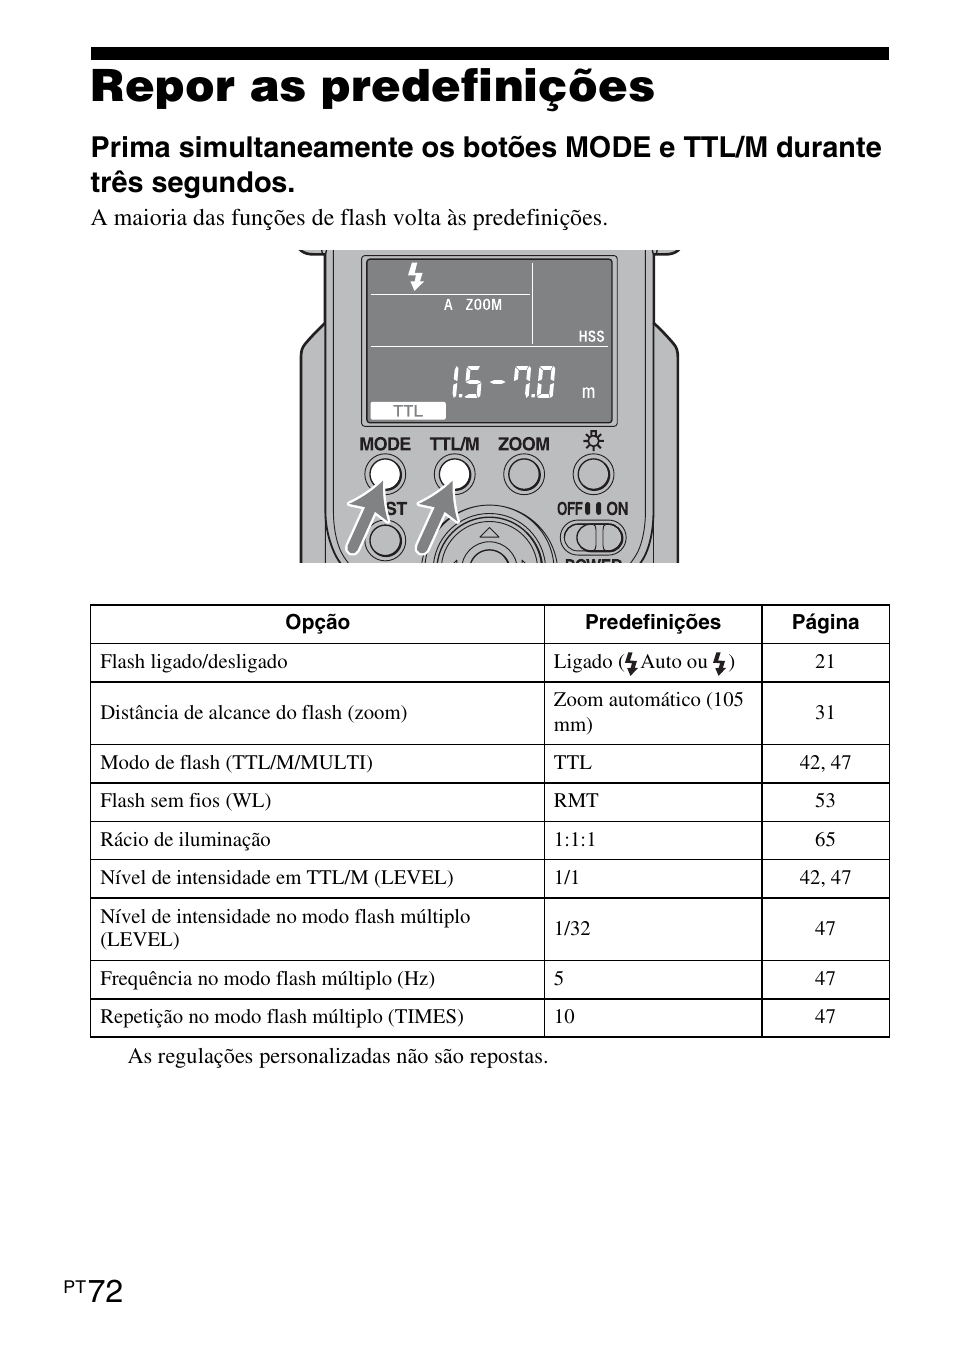 Repor as predefinições | Инструкция по эксплуатации Sony HVL-F58AM | Страница 156 / 339